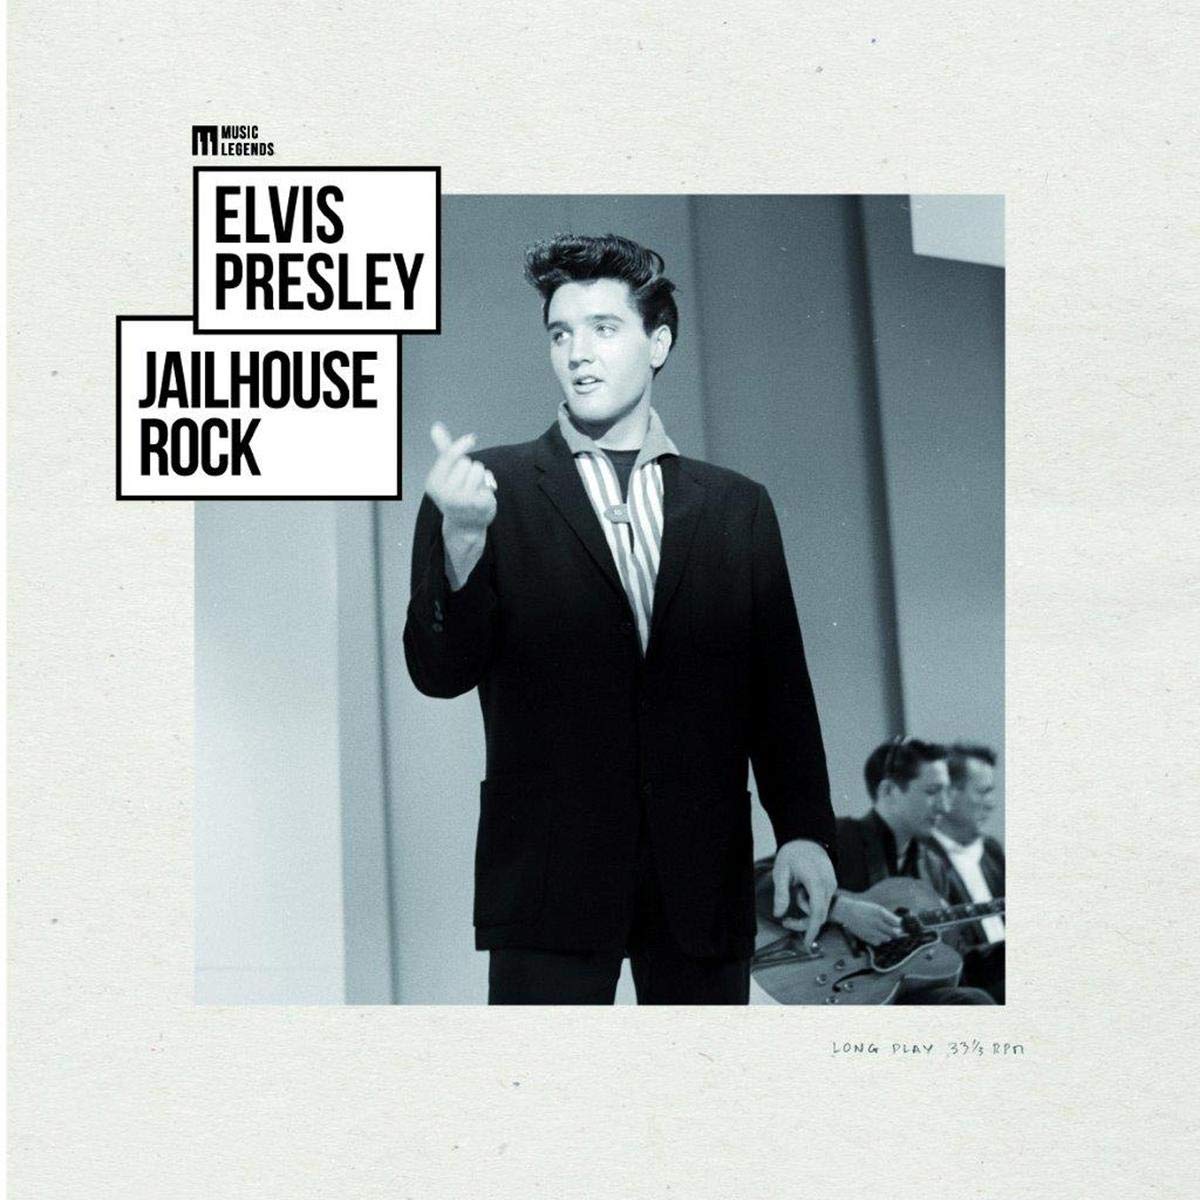 Elvis Presley "Jailhouse Rock" LP